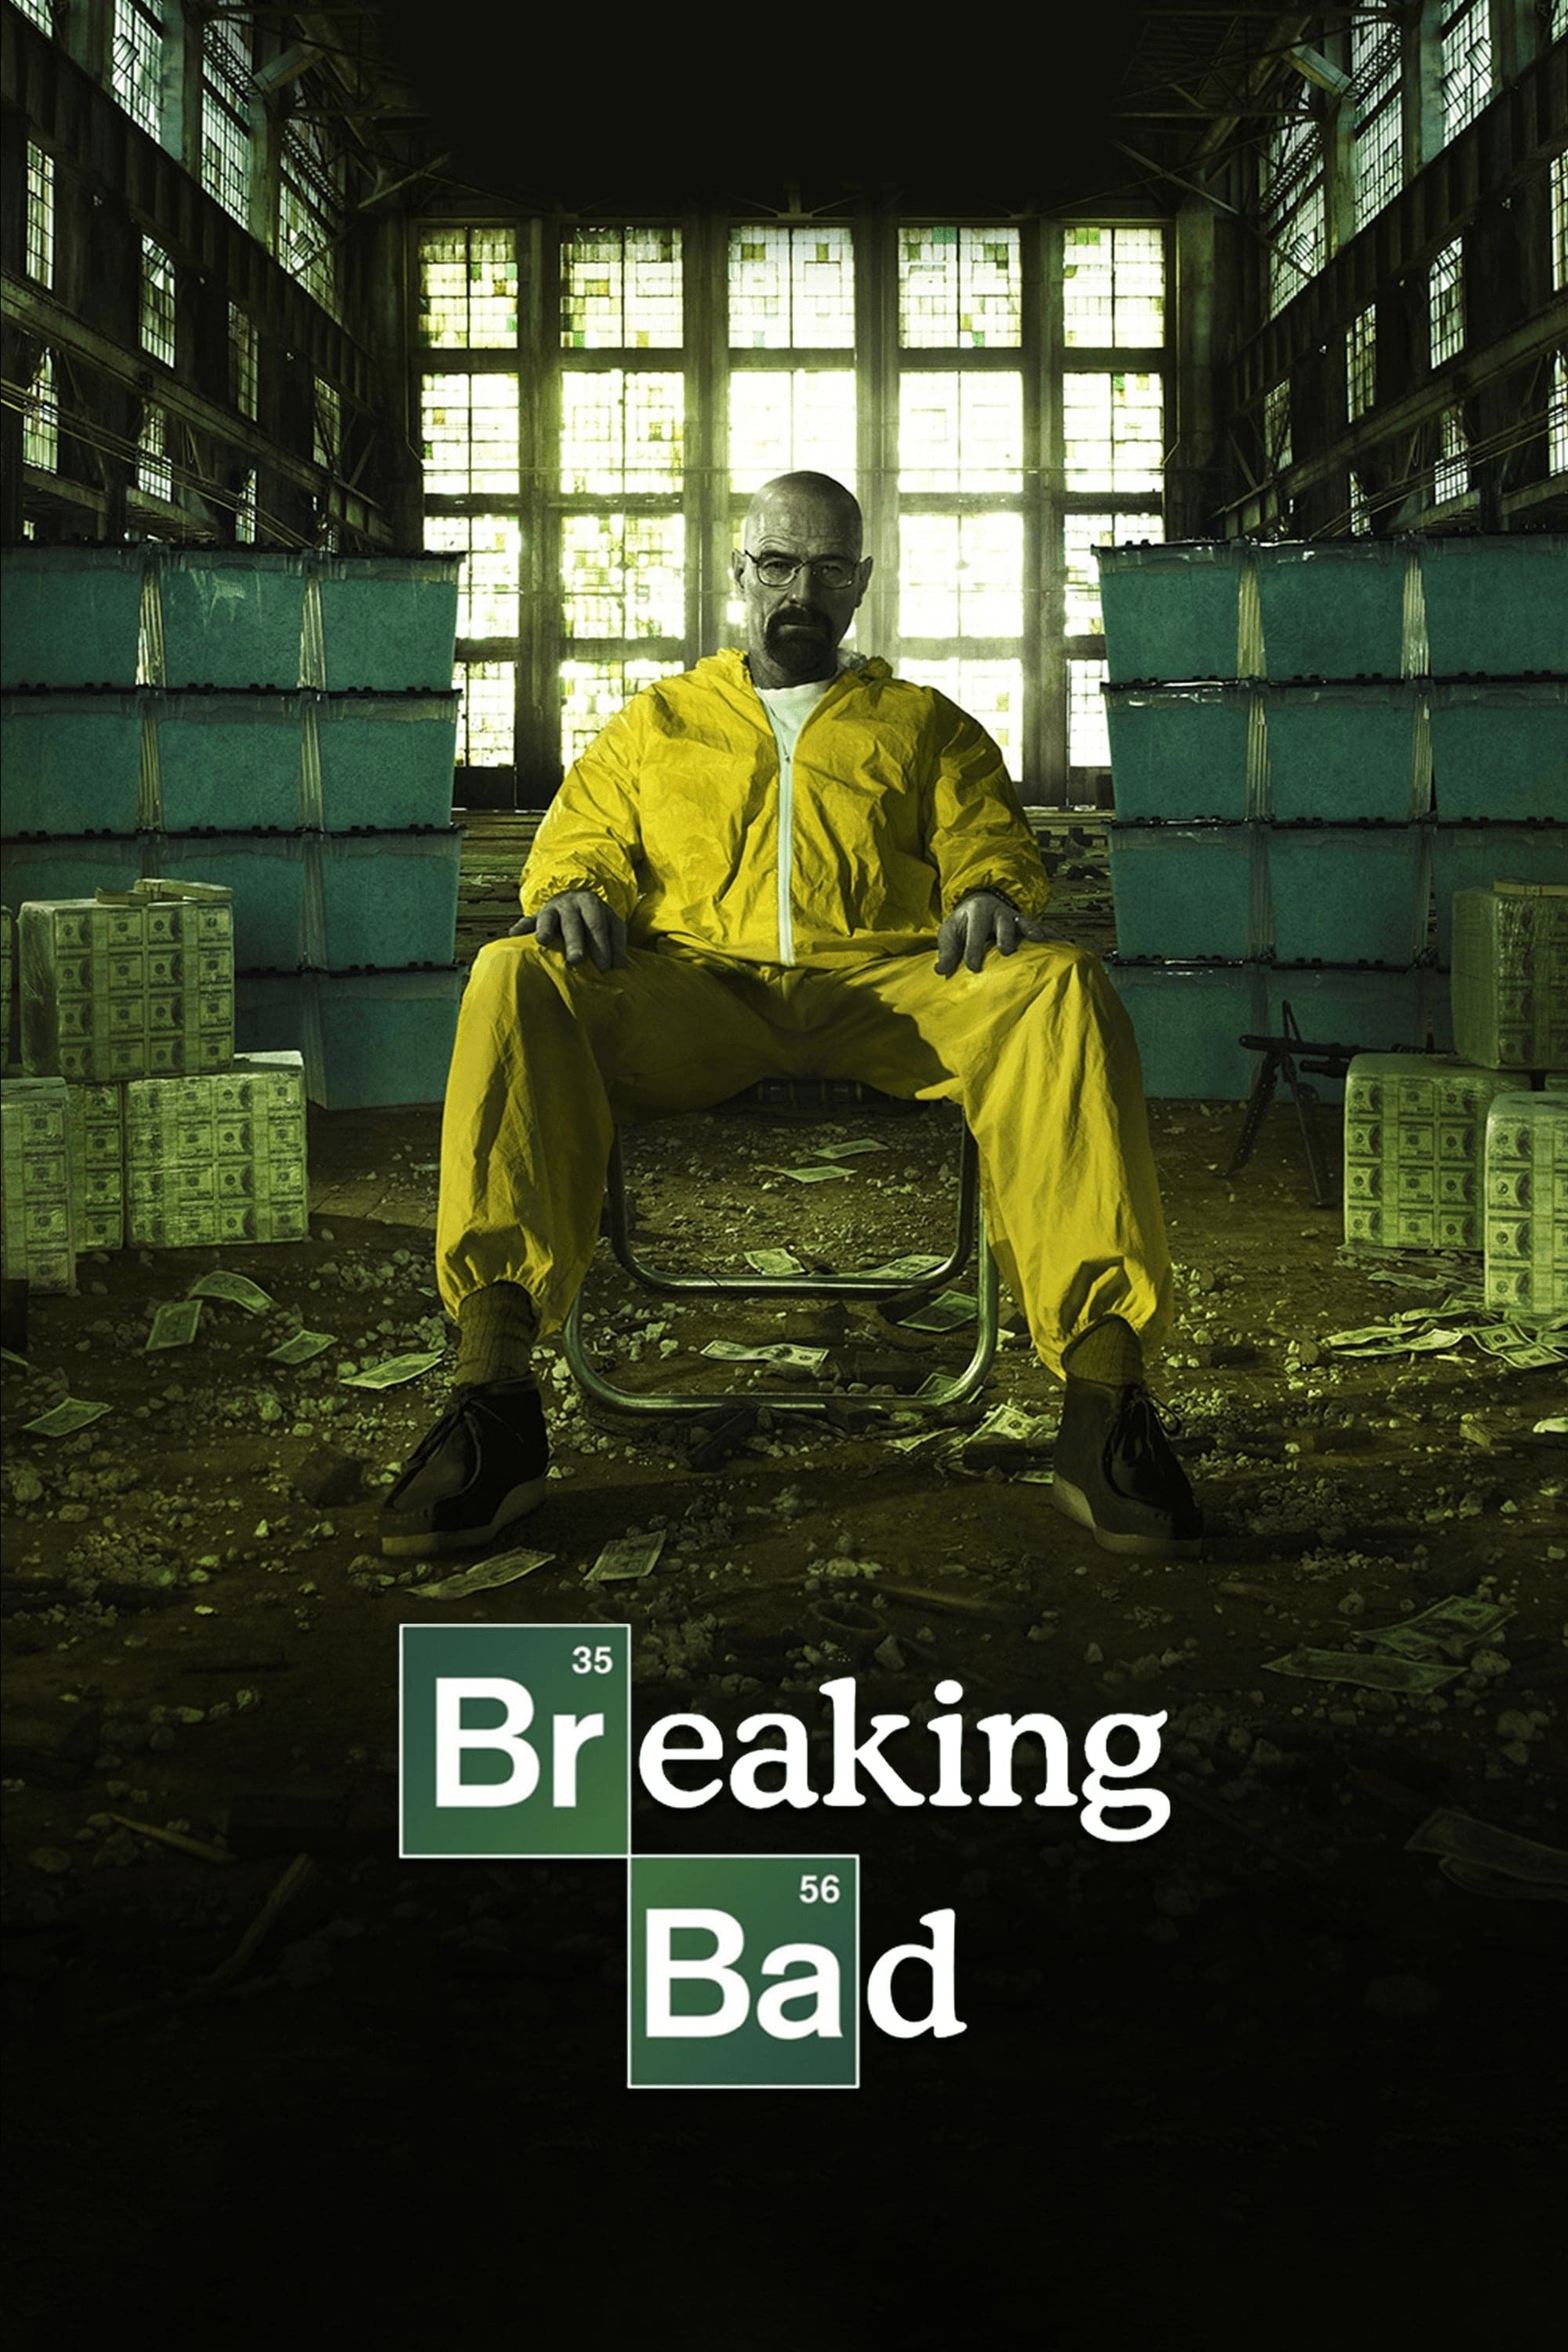 Tập làm người xấu (Phần 5) - Breaking Bad (Season 5) (2012)